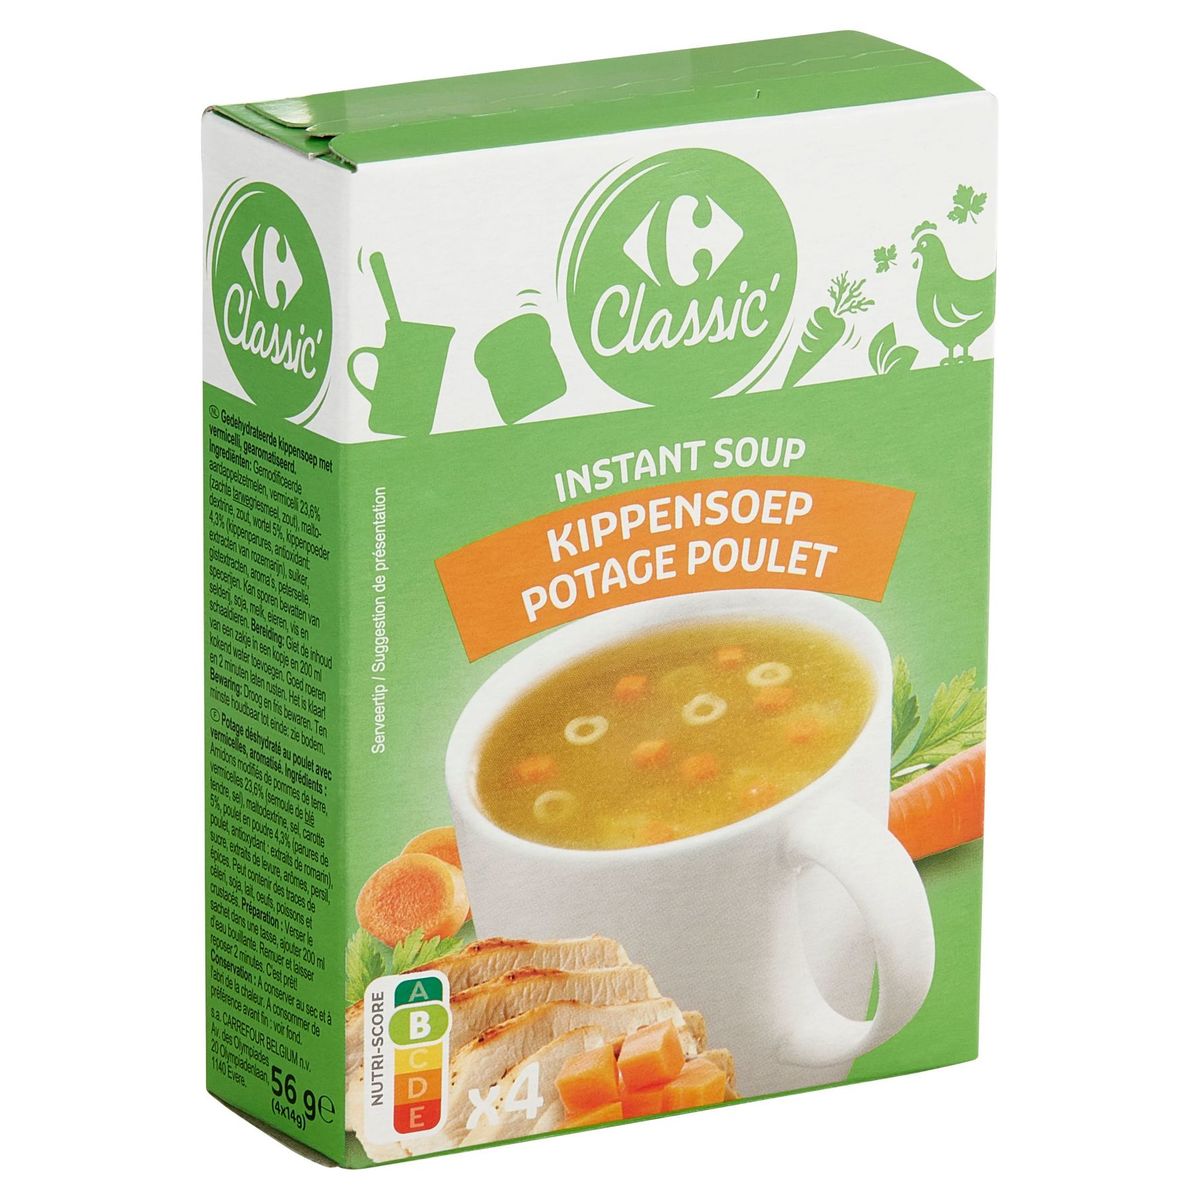 Carrefour Classic' Instant Soup Kippensoep 4 x 14 g